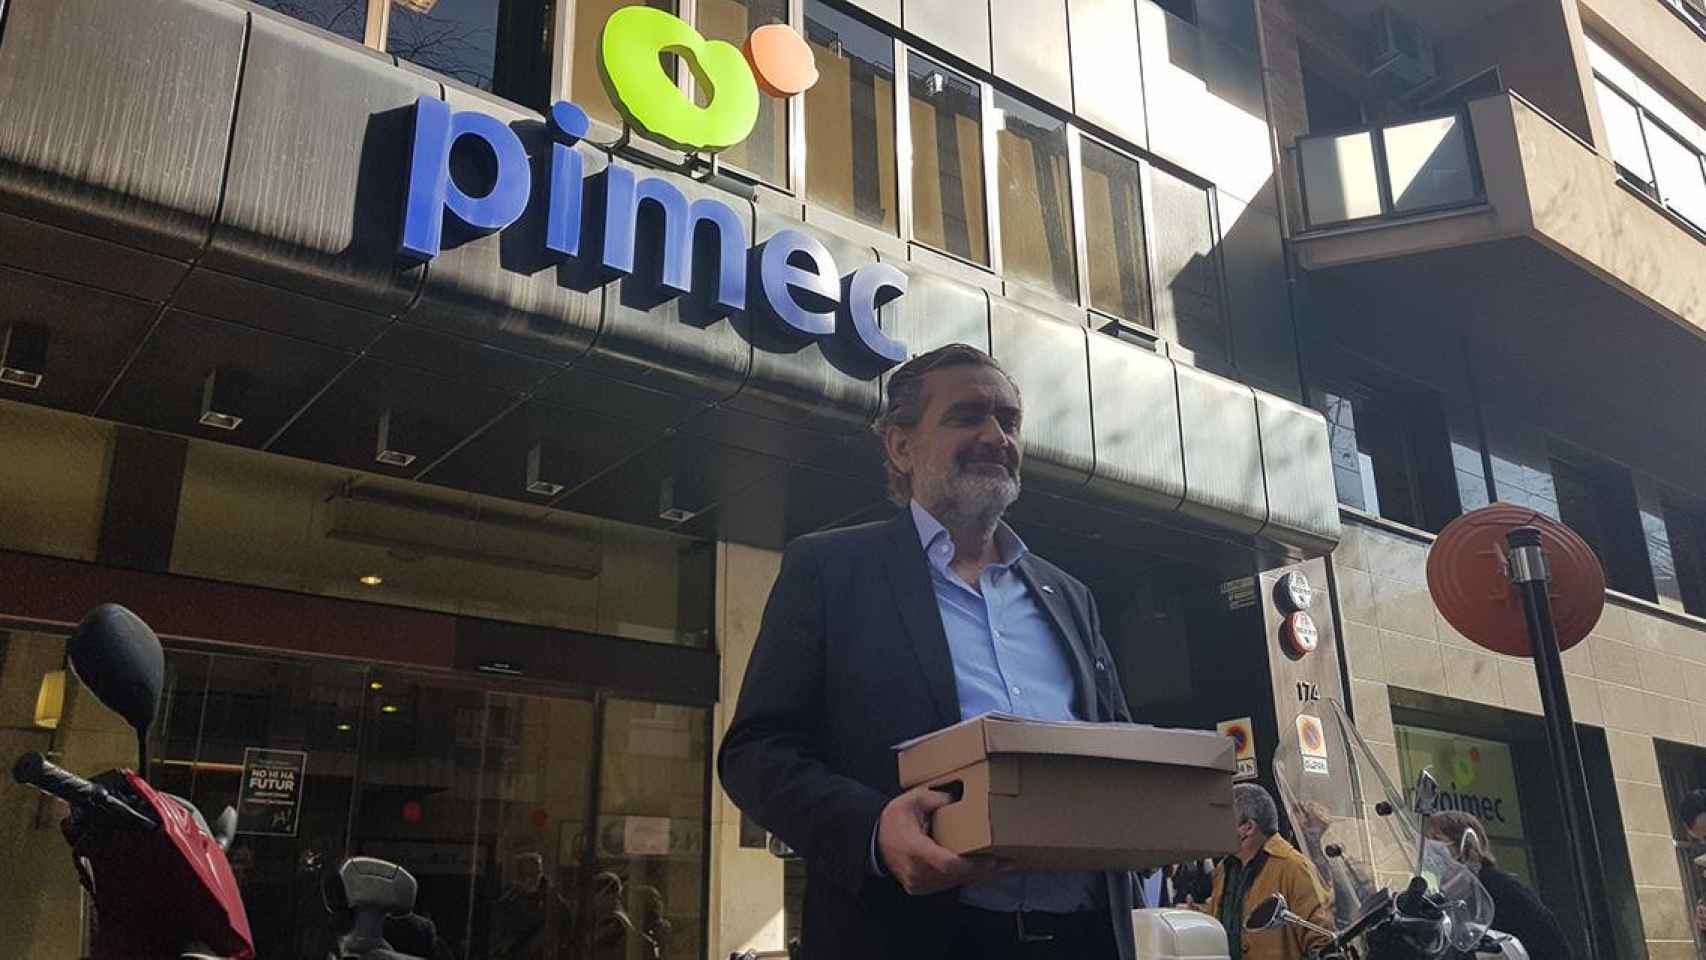 El candidato de EinesPimec, Pere Barrios, entregando los avales para presentar su candidatura a presidir Pimec este jueves / CARLOS MANZANO